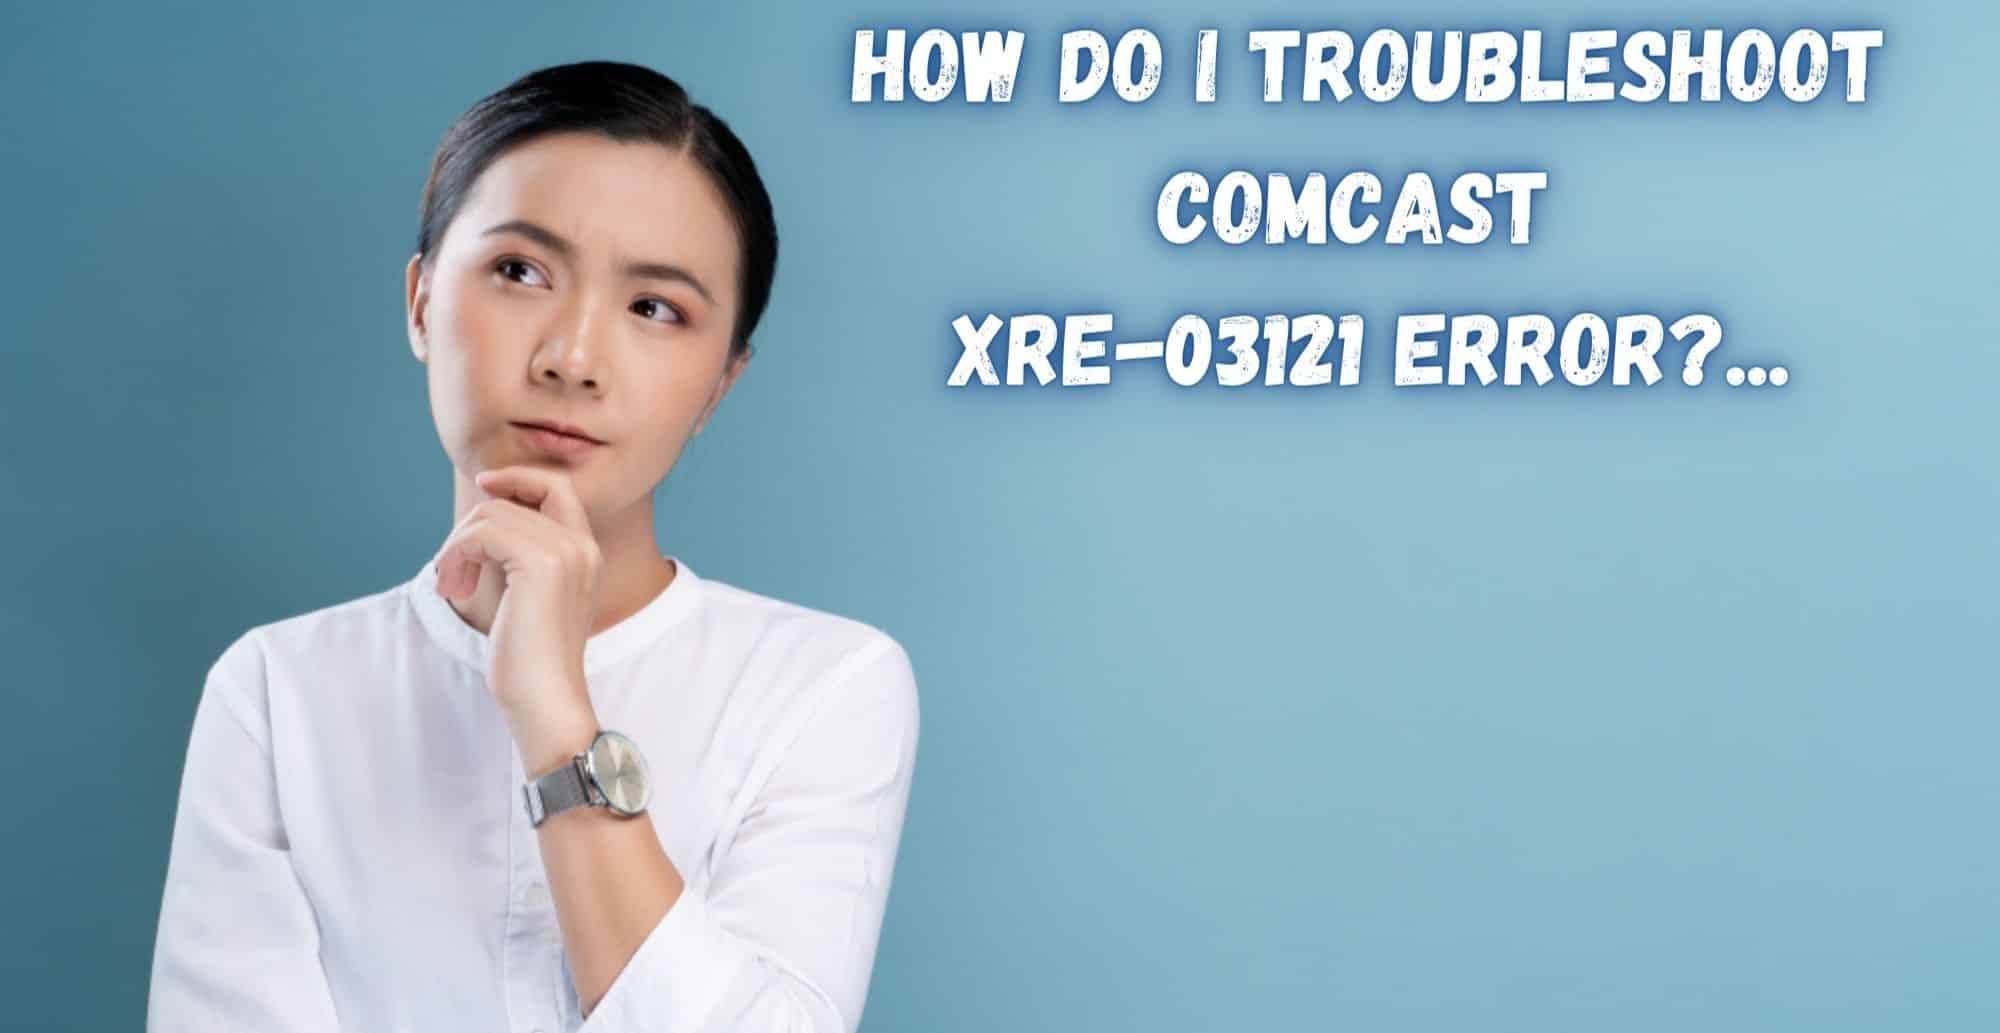 How Do I Troubleshoot Comcast XRE-03121 Error